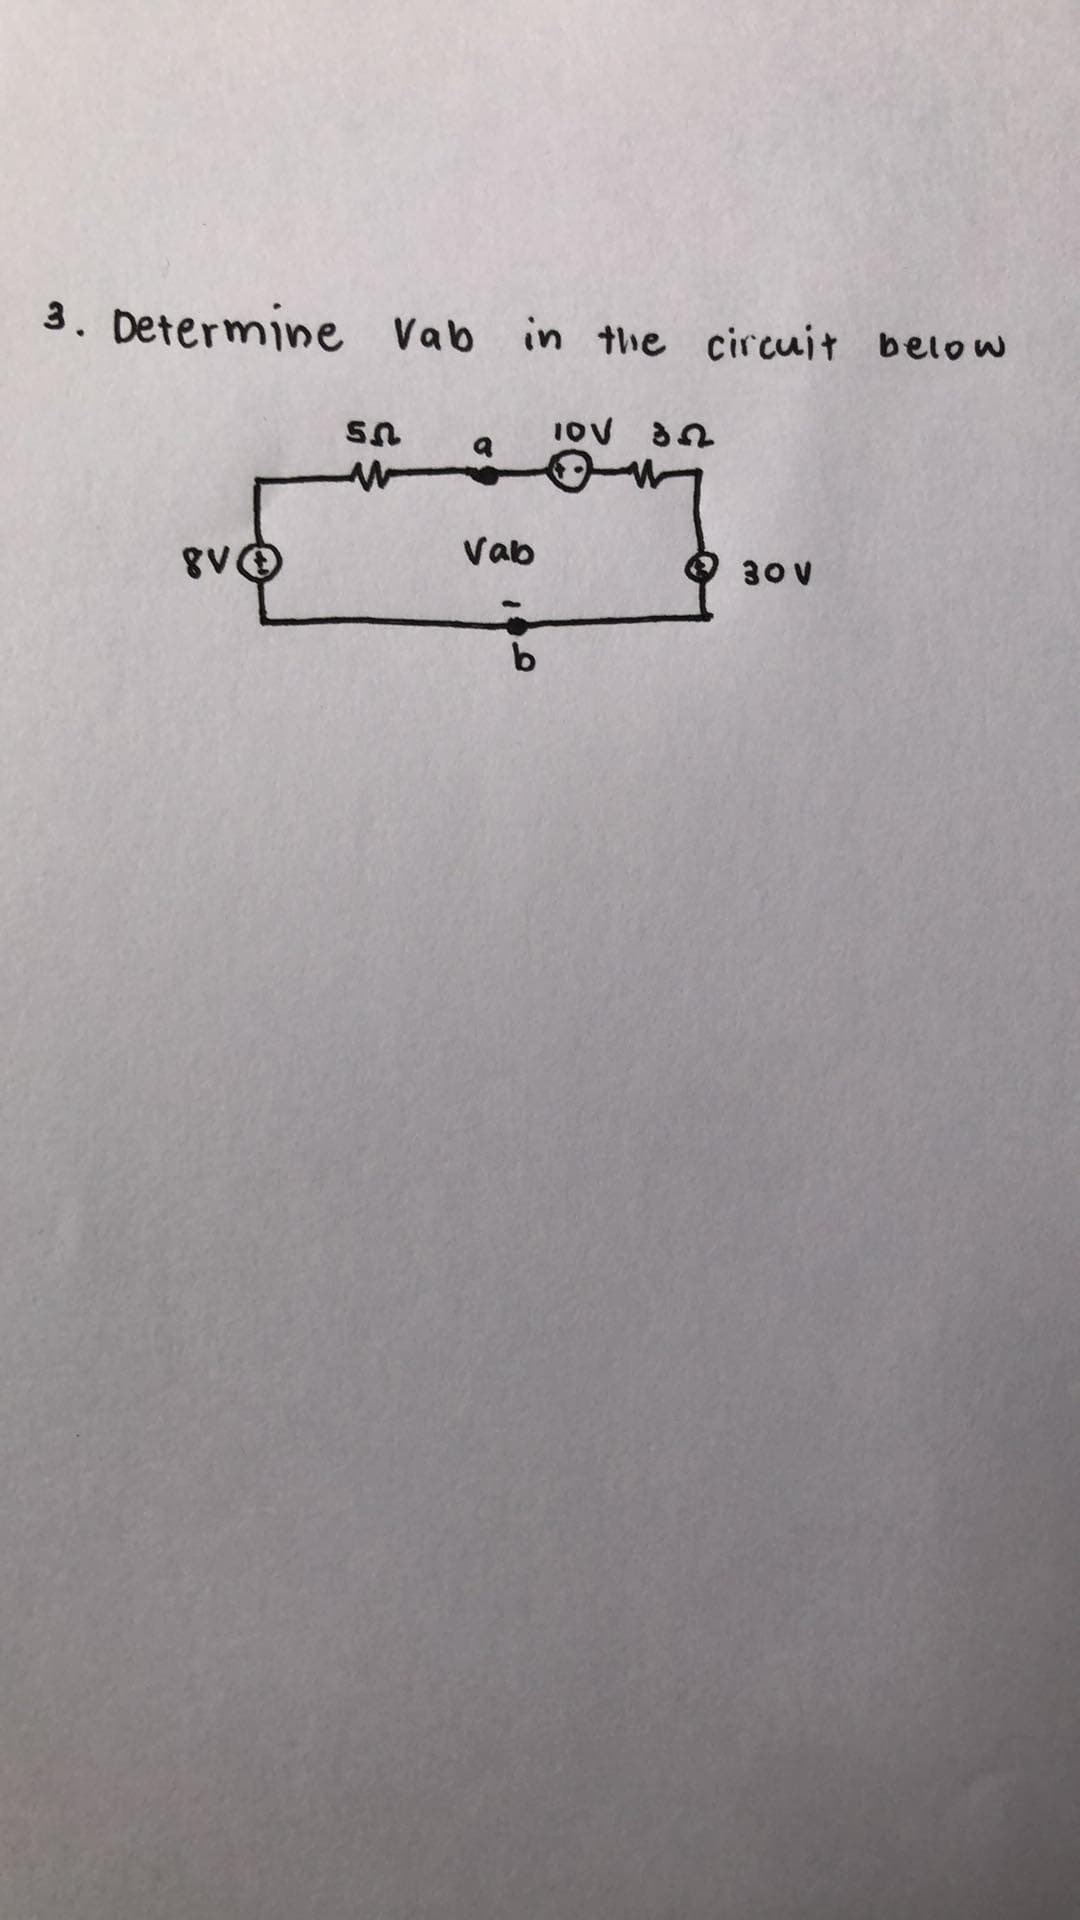 3. Determine Vab in the circuit below
Vab
30V
